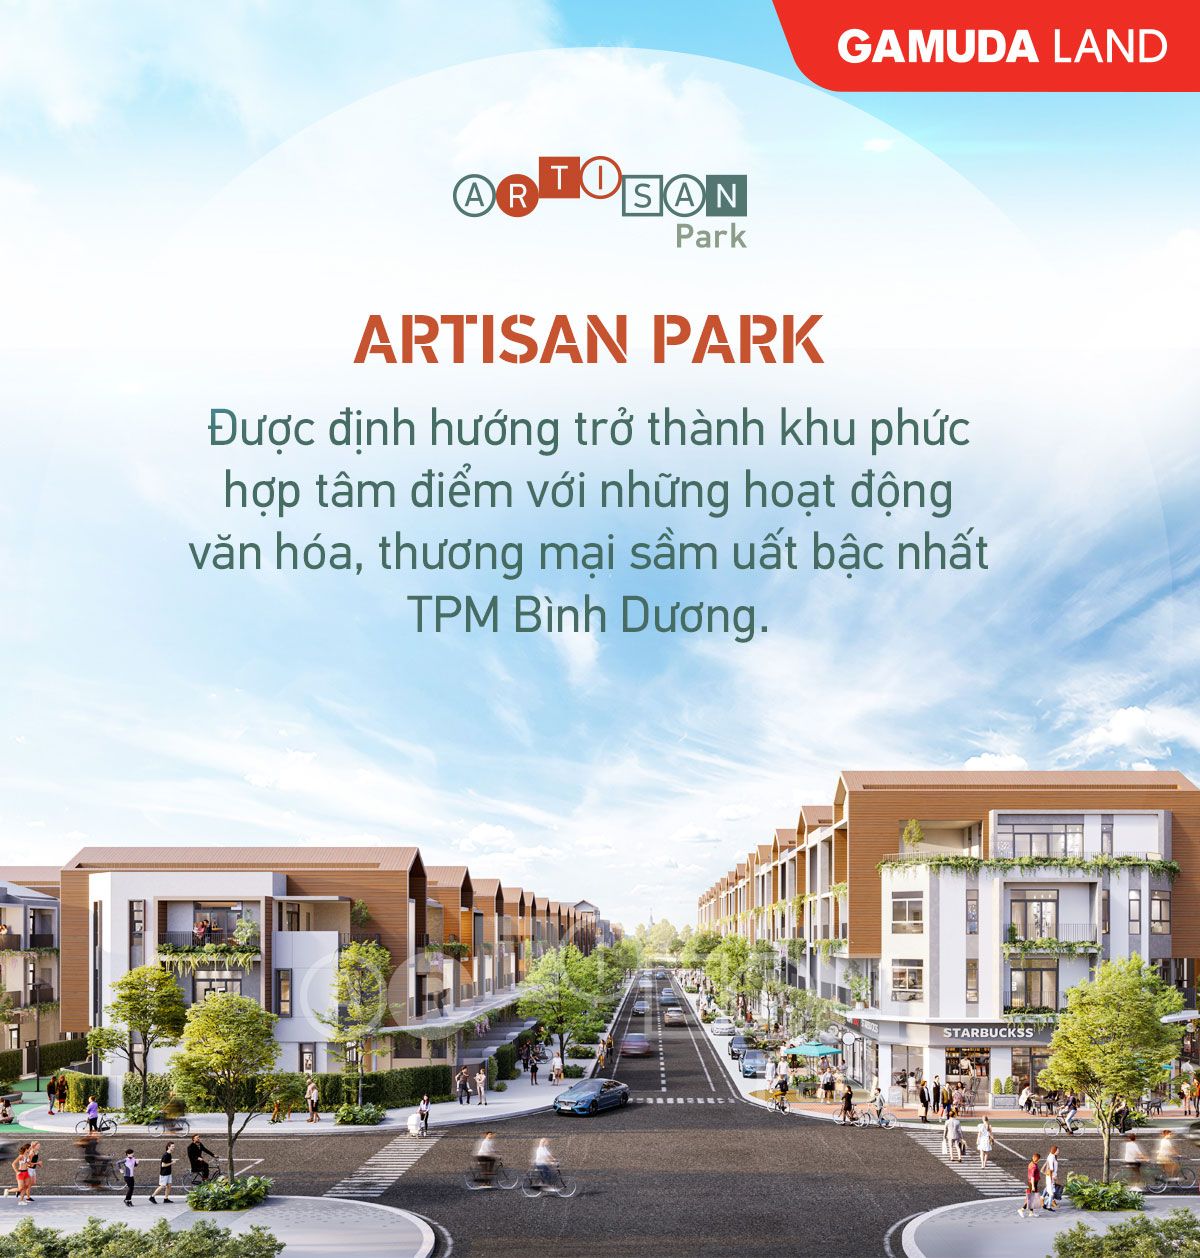 Arisan Park đã được định hướng trở thành khu phức hợp tâm điểm với những hoạt động văn hóa, thương mại sầm uất bậc nhất TPM Bình Dương.